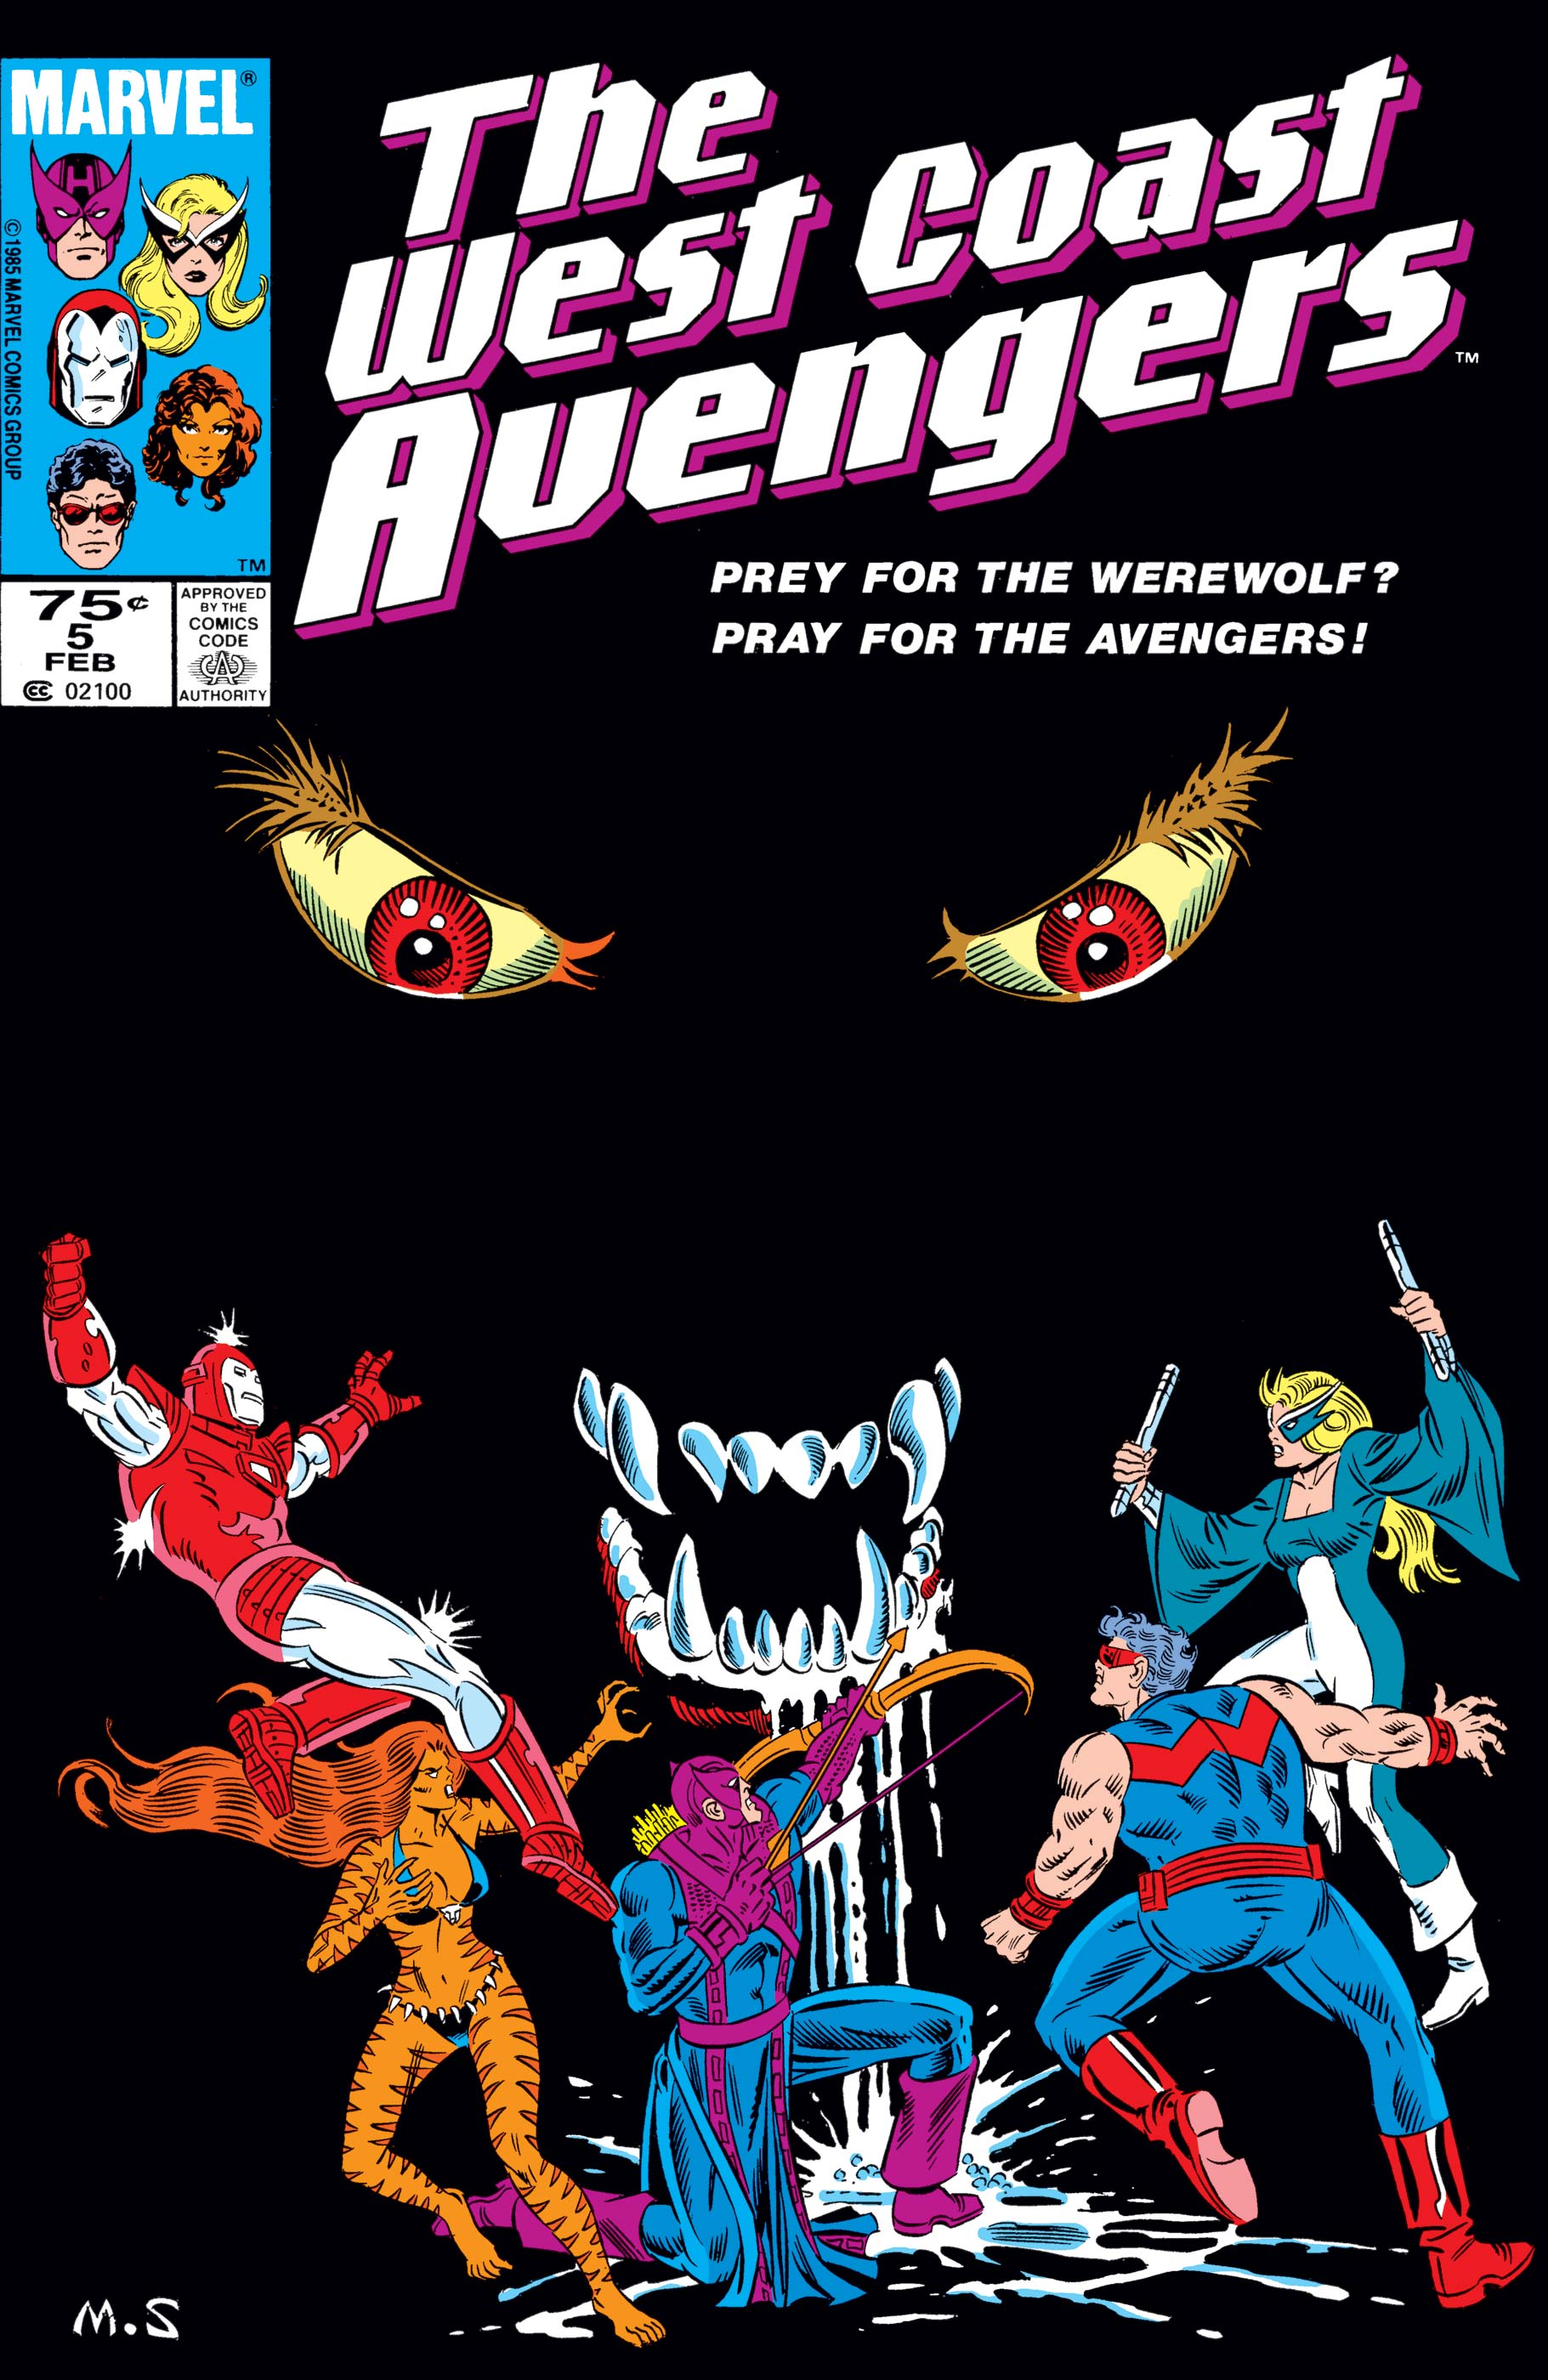 West Coast Avengers (1985) #5